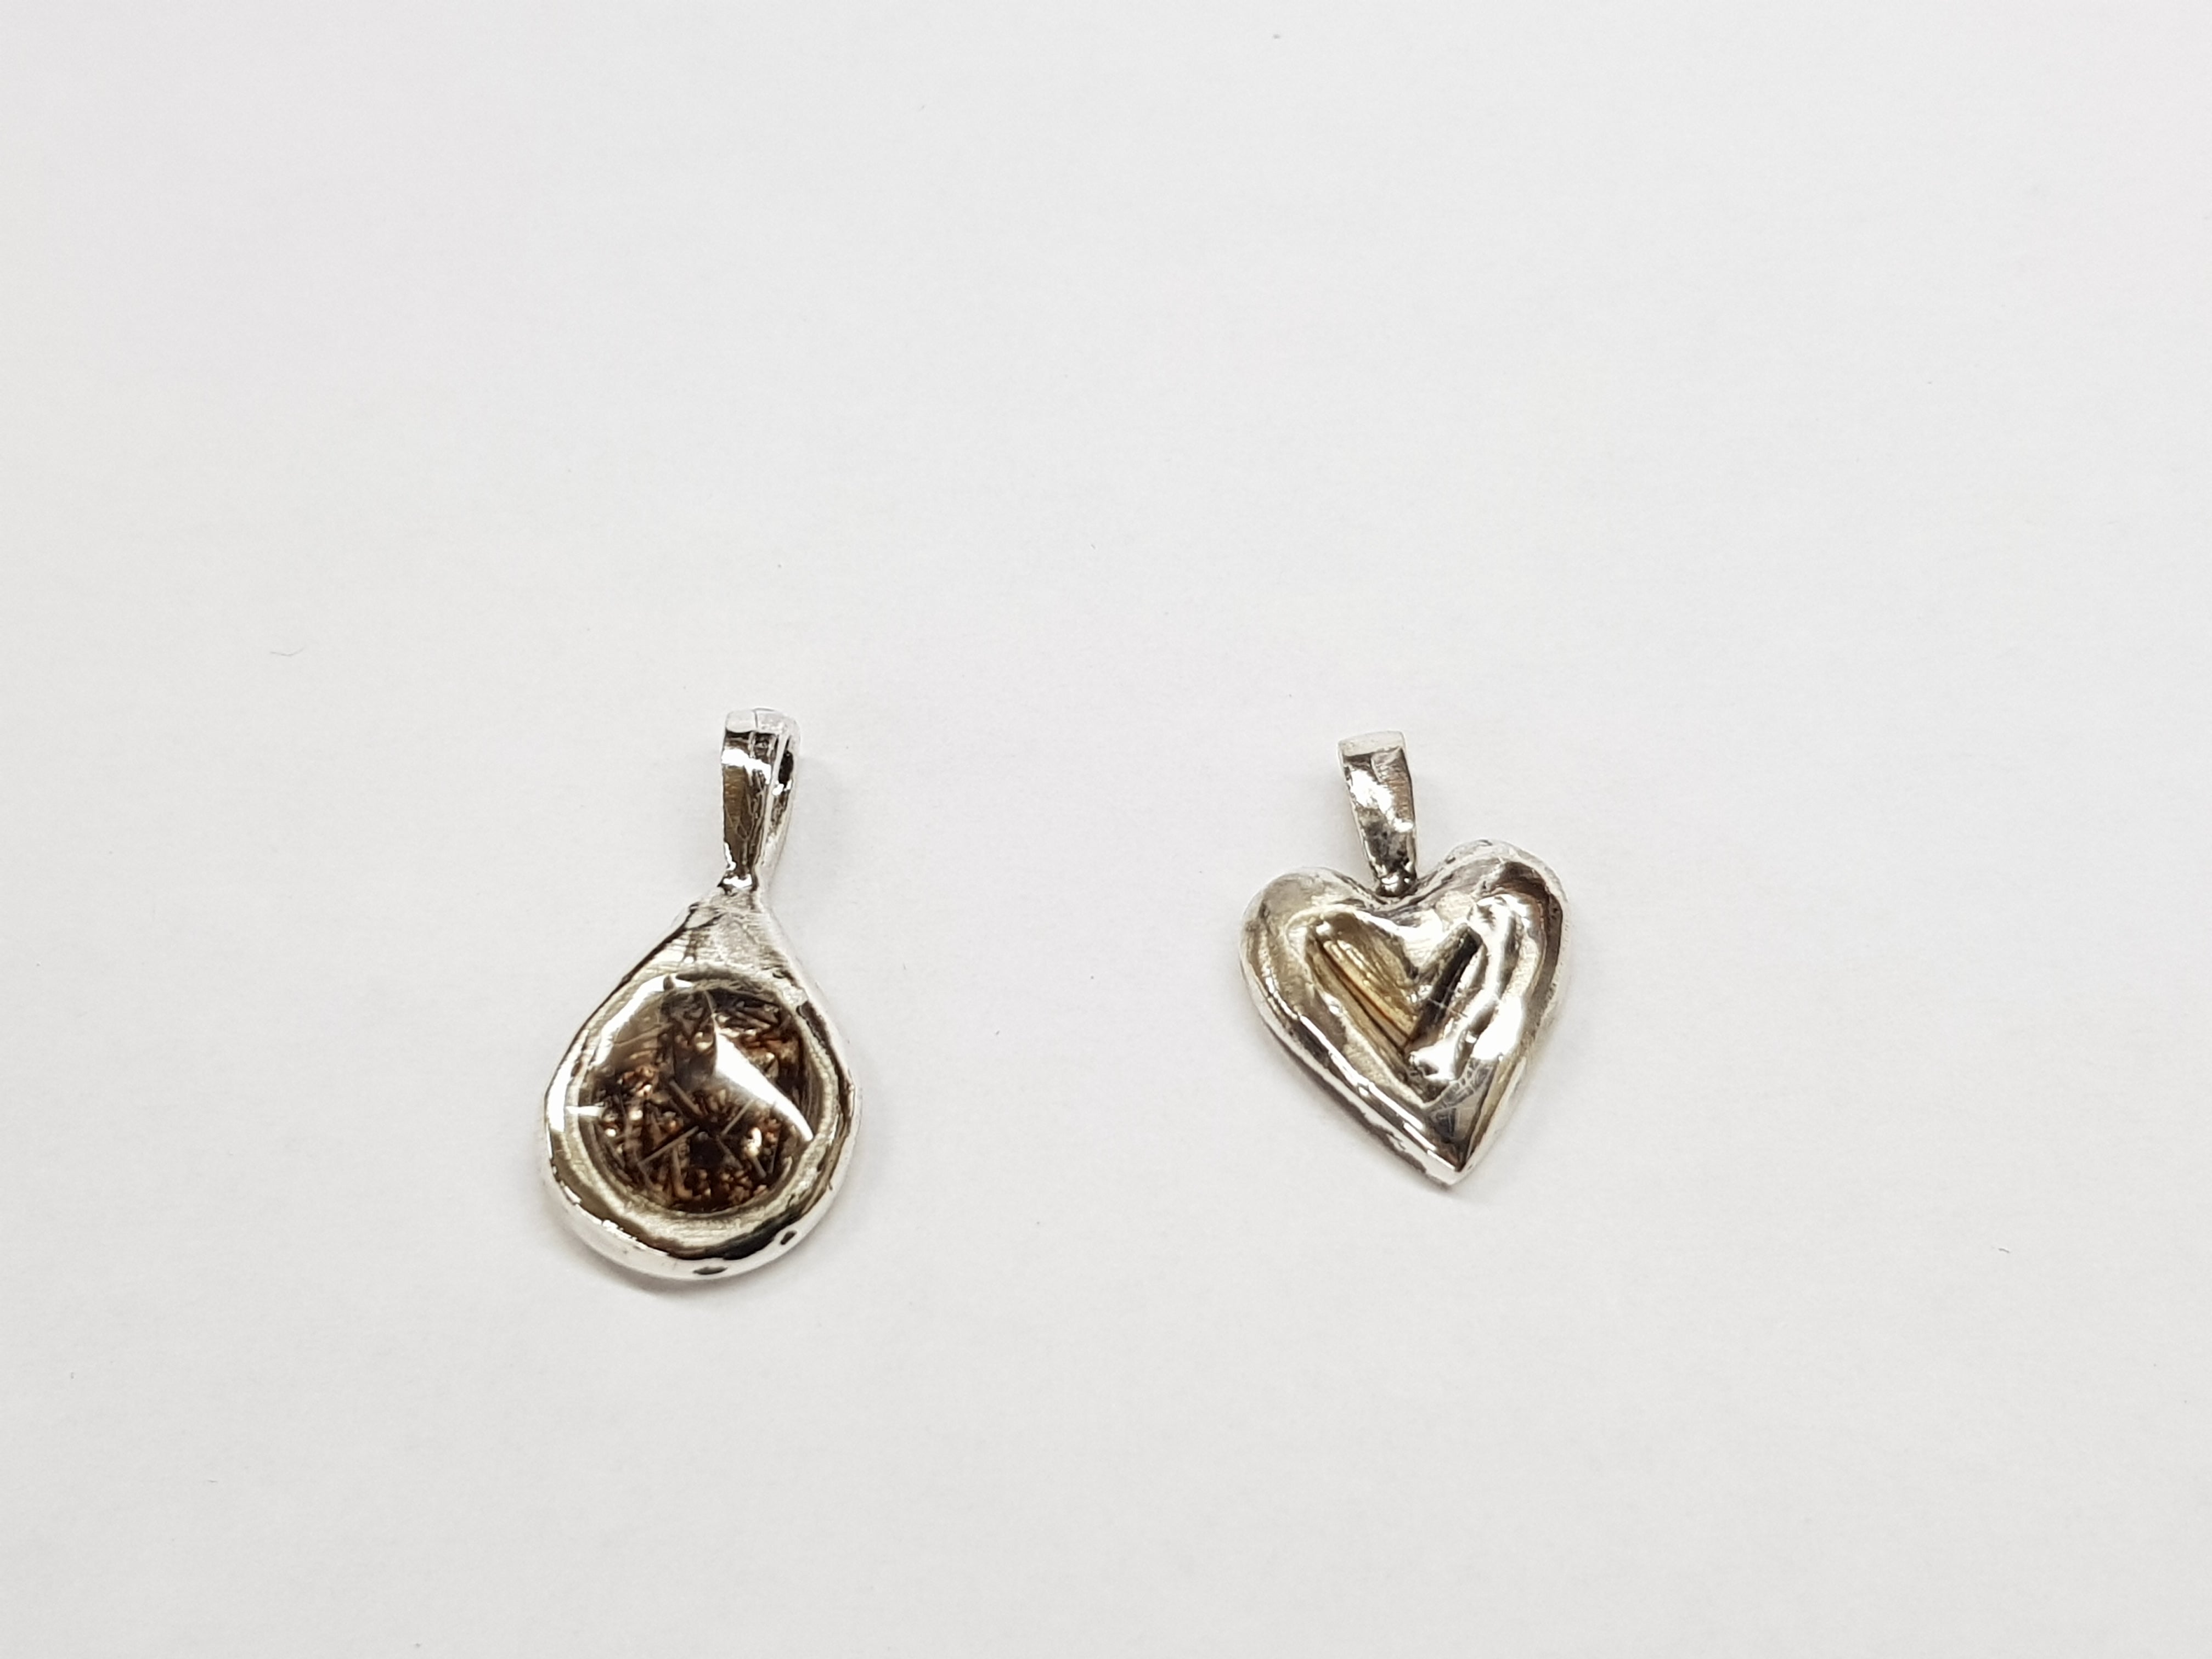 Horsehair 925 sterling silver pendants - horsehair - GoldSnaffle